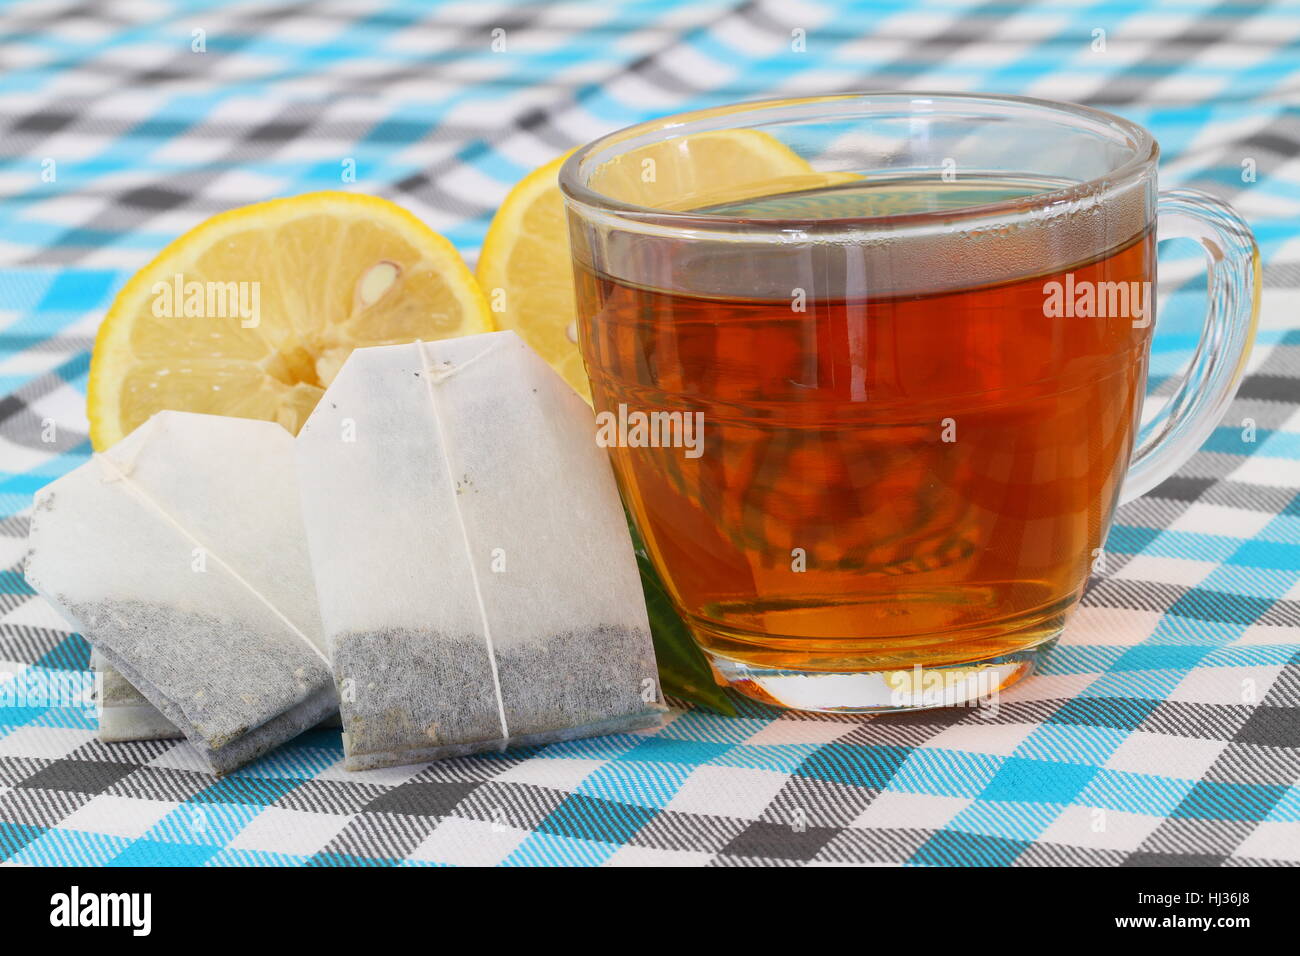 Avec un plateau en verre transparent, sachets de thé et de citron Banque D'Images